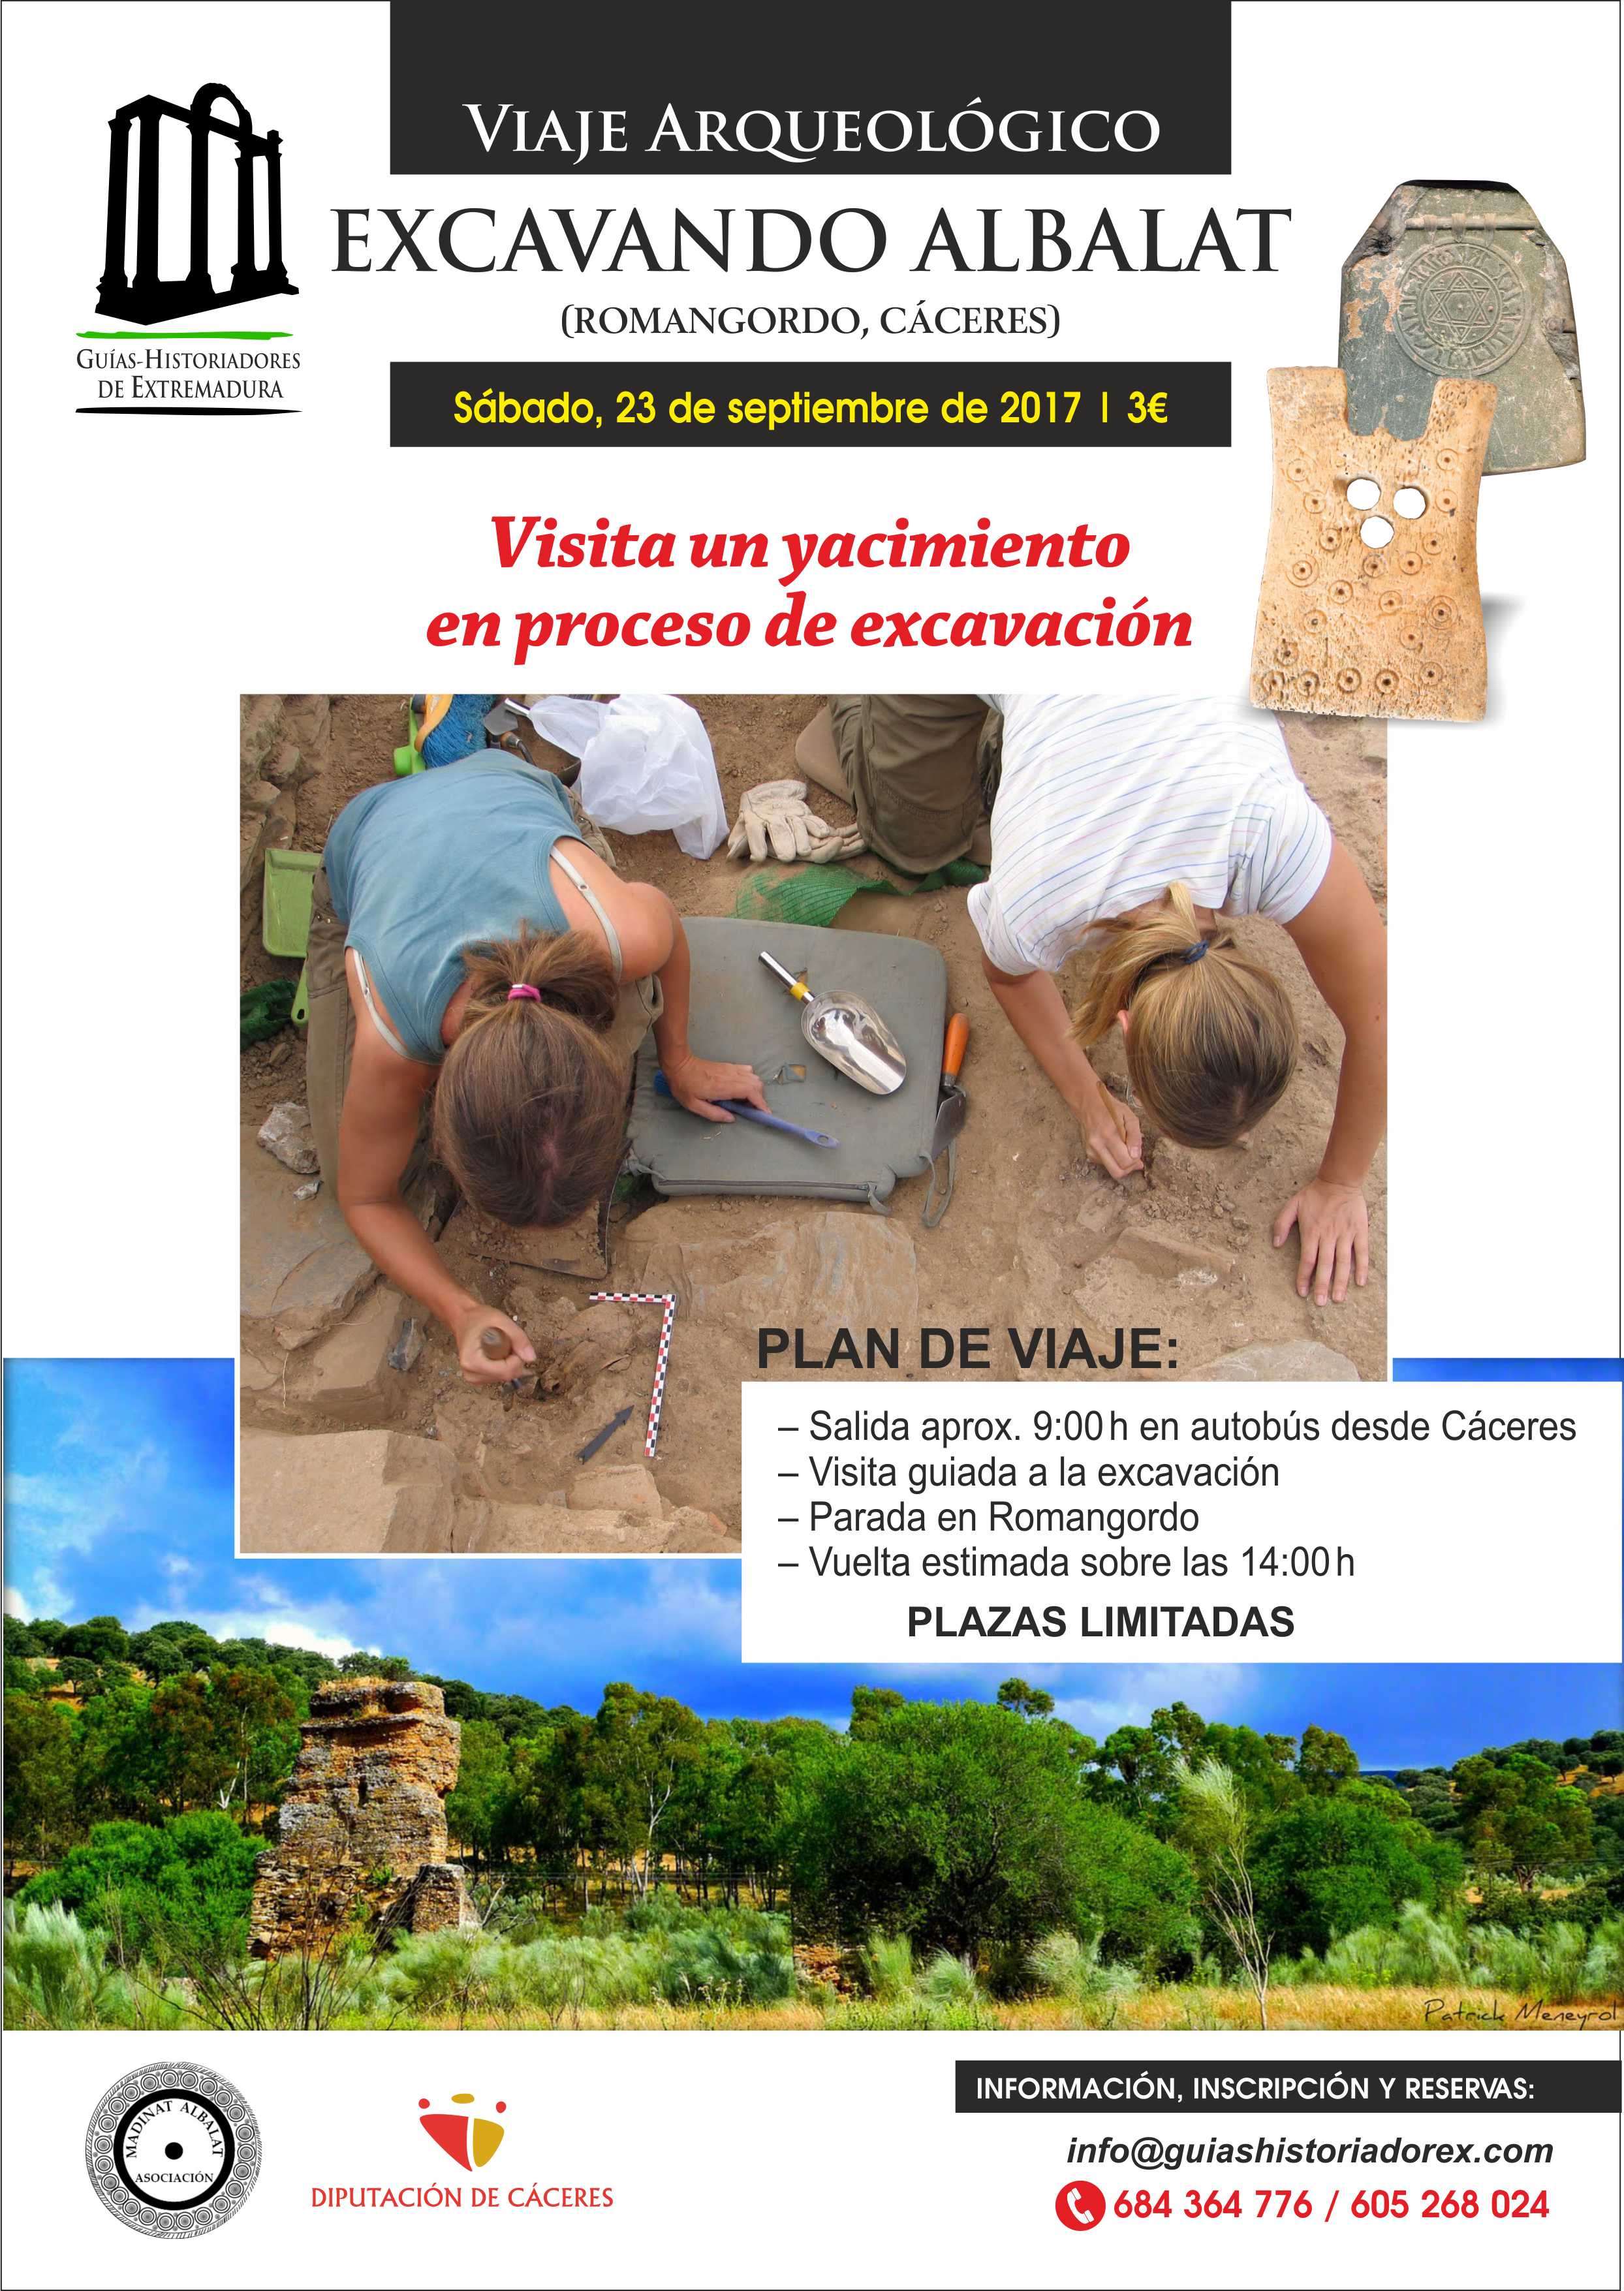 Cartel del viaje arqueológico al yacimiento de Madinat Albalat (Romangordo, Cáceres)